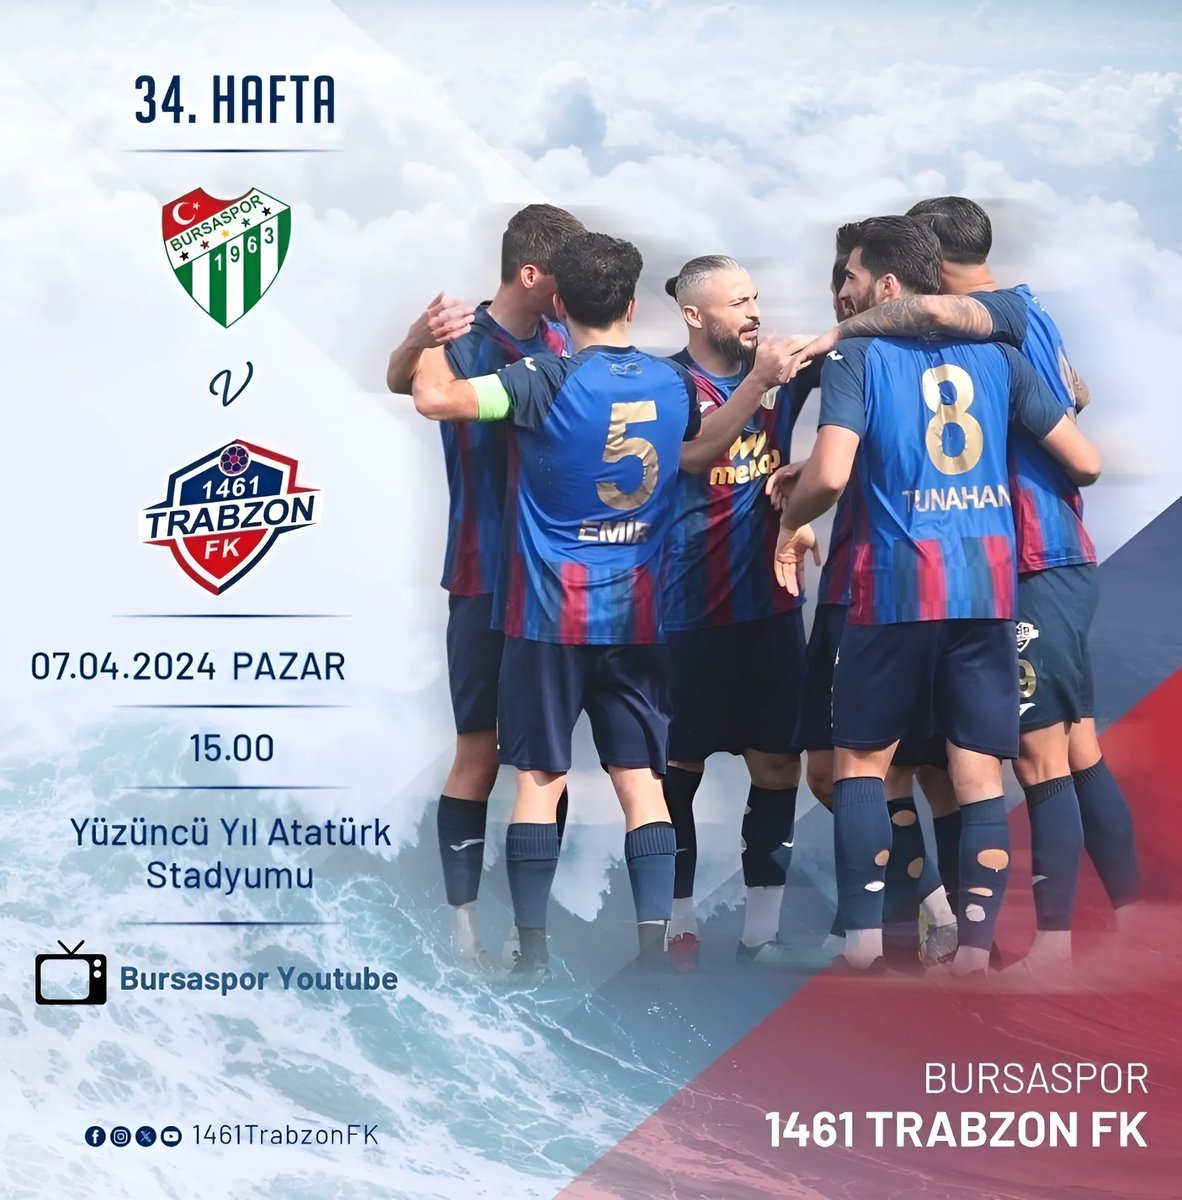 🔥BUGÜN GÜNLERDEN 1461 TRABZON FK 🏆TFF 2.Lig Beyaz Grup 34. Hafta ⚽Bursaspor - 1461 Trabzon FK 🗓07.04.2024 🏟Yüzüncü Yıl Atatürk Stadyumu ⏰15:00 📺 Bursaspor Youtube